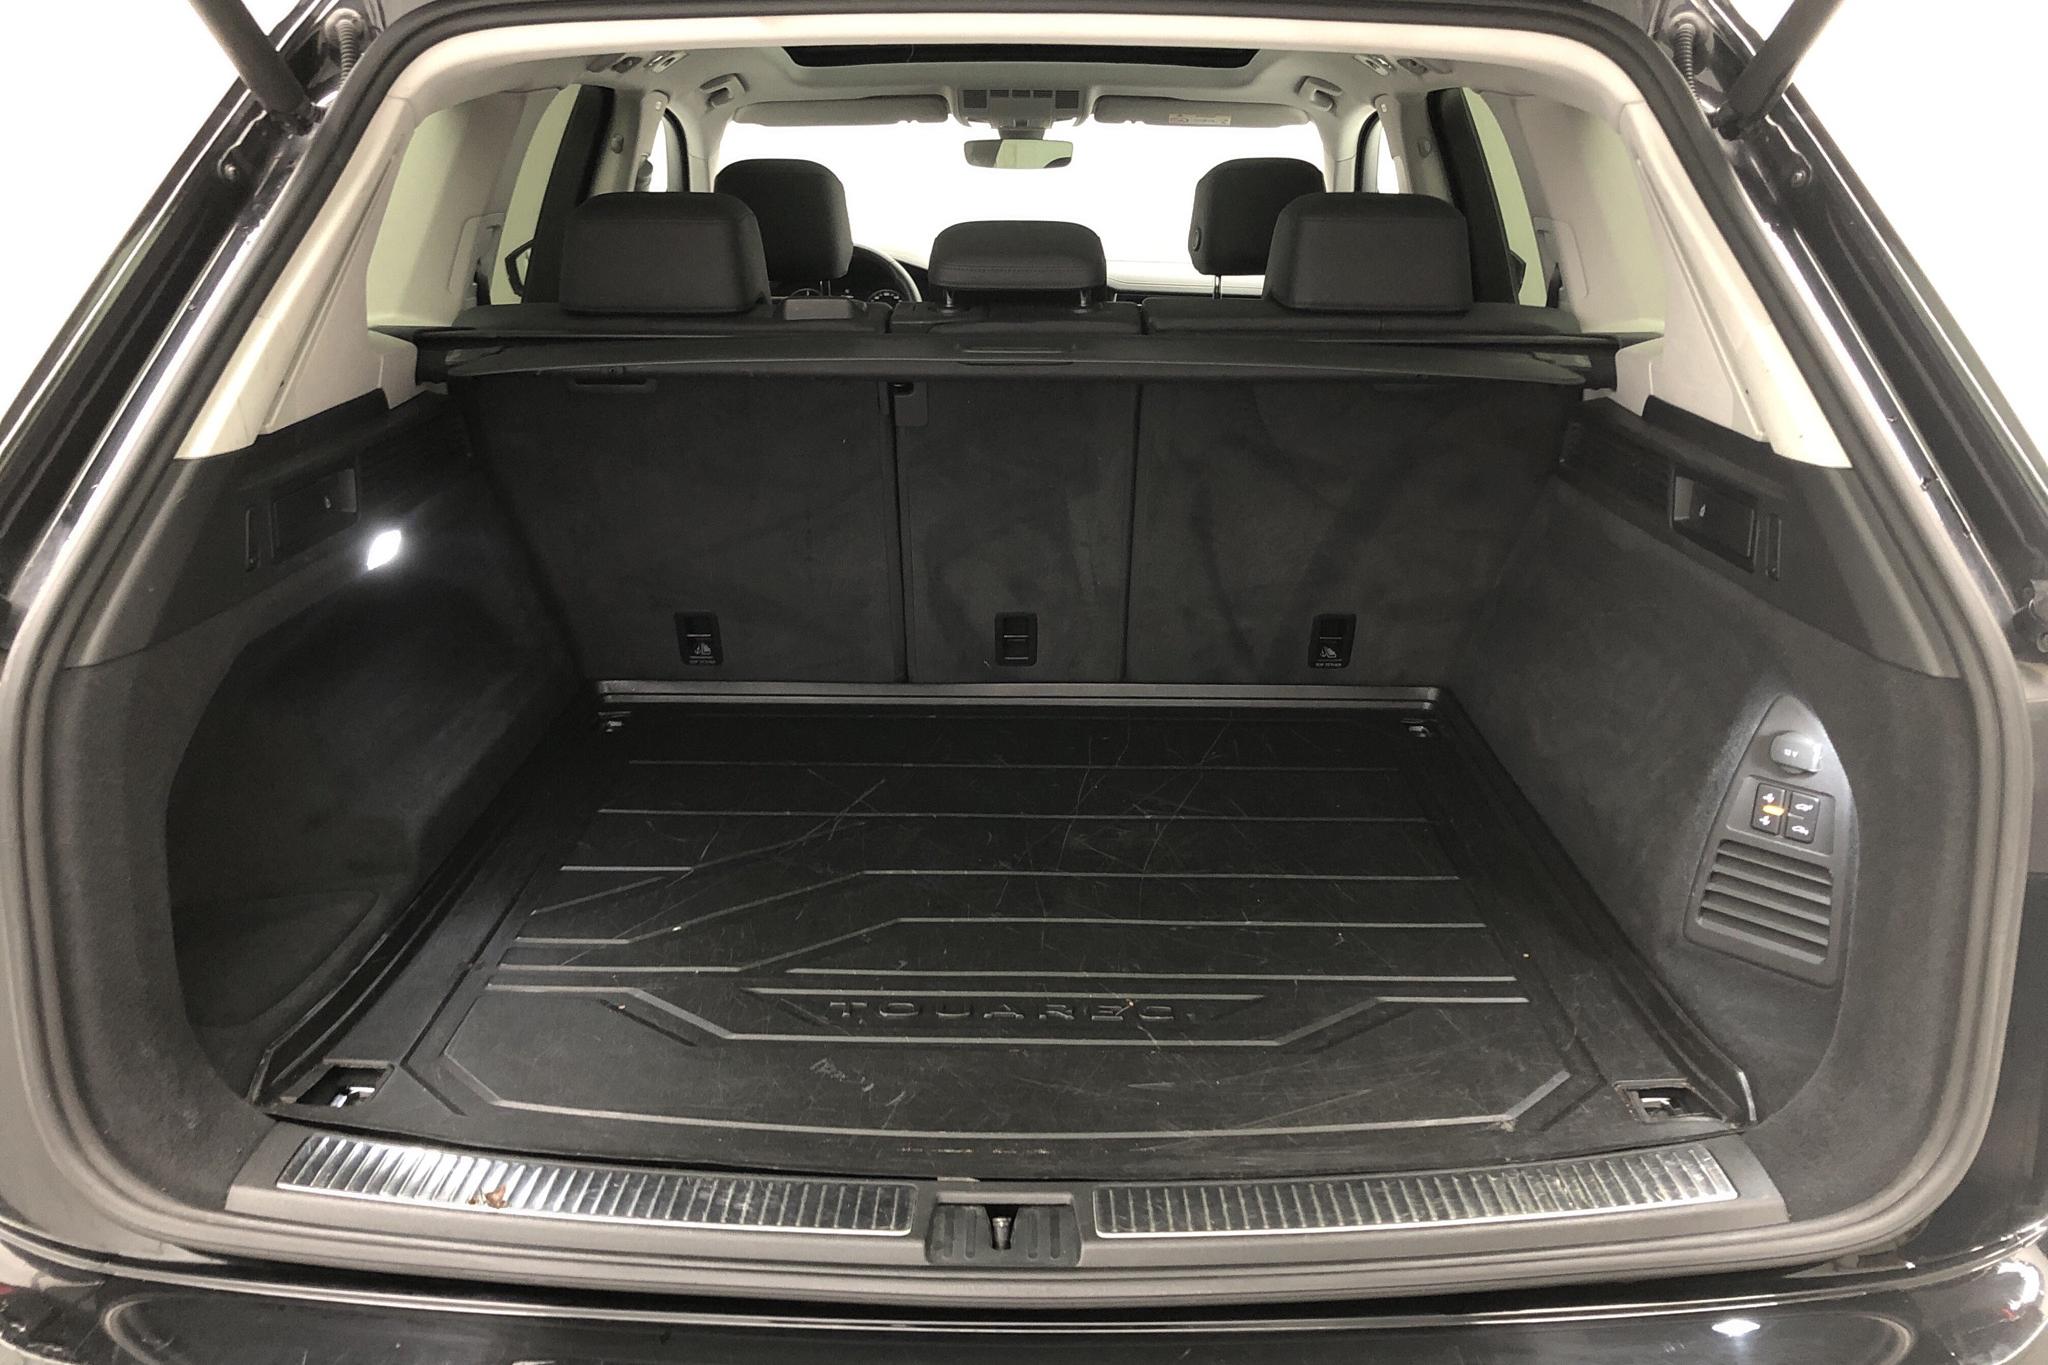 VW Touareg V6 TDI 4Motion (286hk) - 89 420 km - Automatic - black - 2019